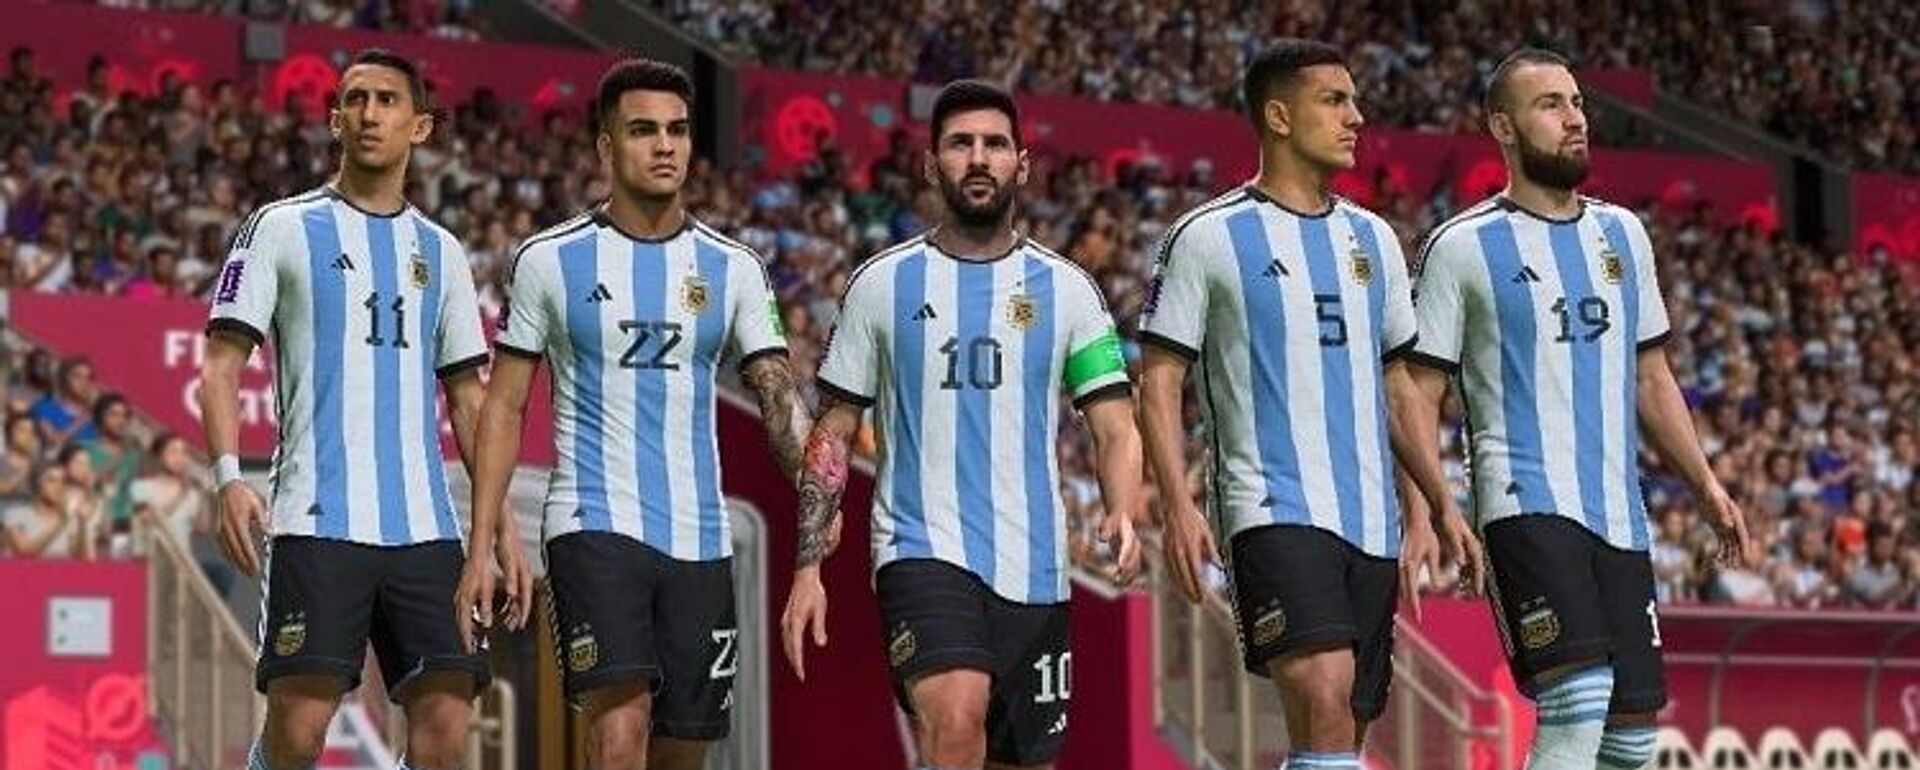 EA Sports yapımı FIFA 23 oyununun simülasyon sistemine göre, tartışmaların gölgesinde Katar'da düzenlenecek olan Dünya Kupası turnuvasını Arjantin kazanacak, gol kralı ise takımın yıldızı Lionel Messi olacak. - Sputnik Türkiye, 1920, 09.11.2022